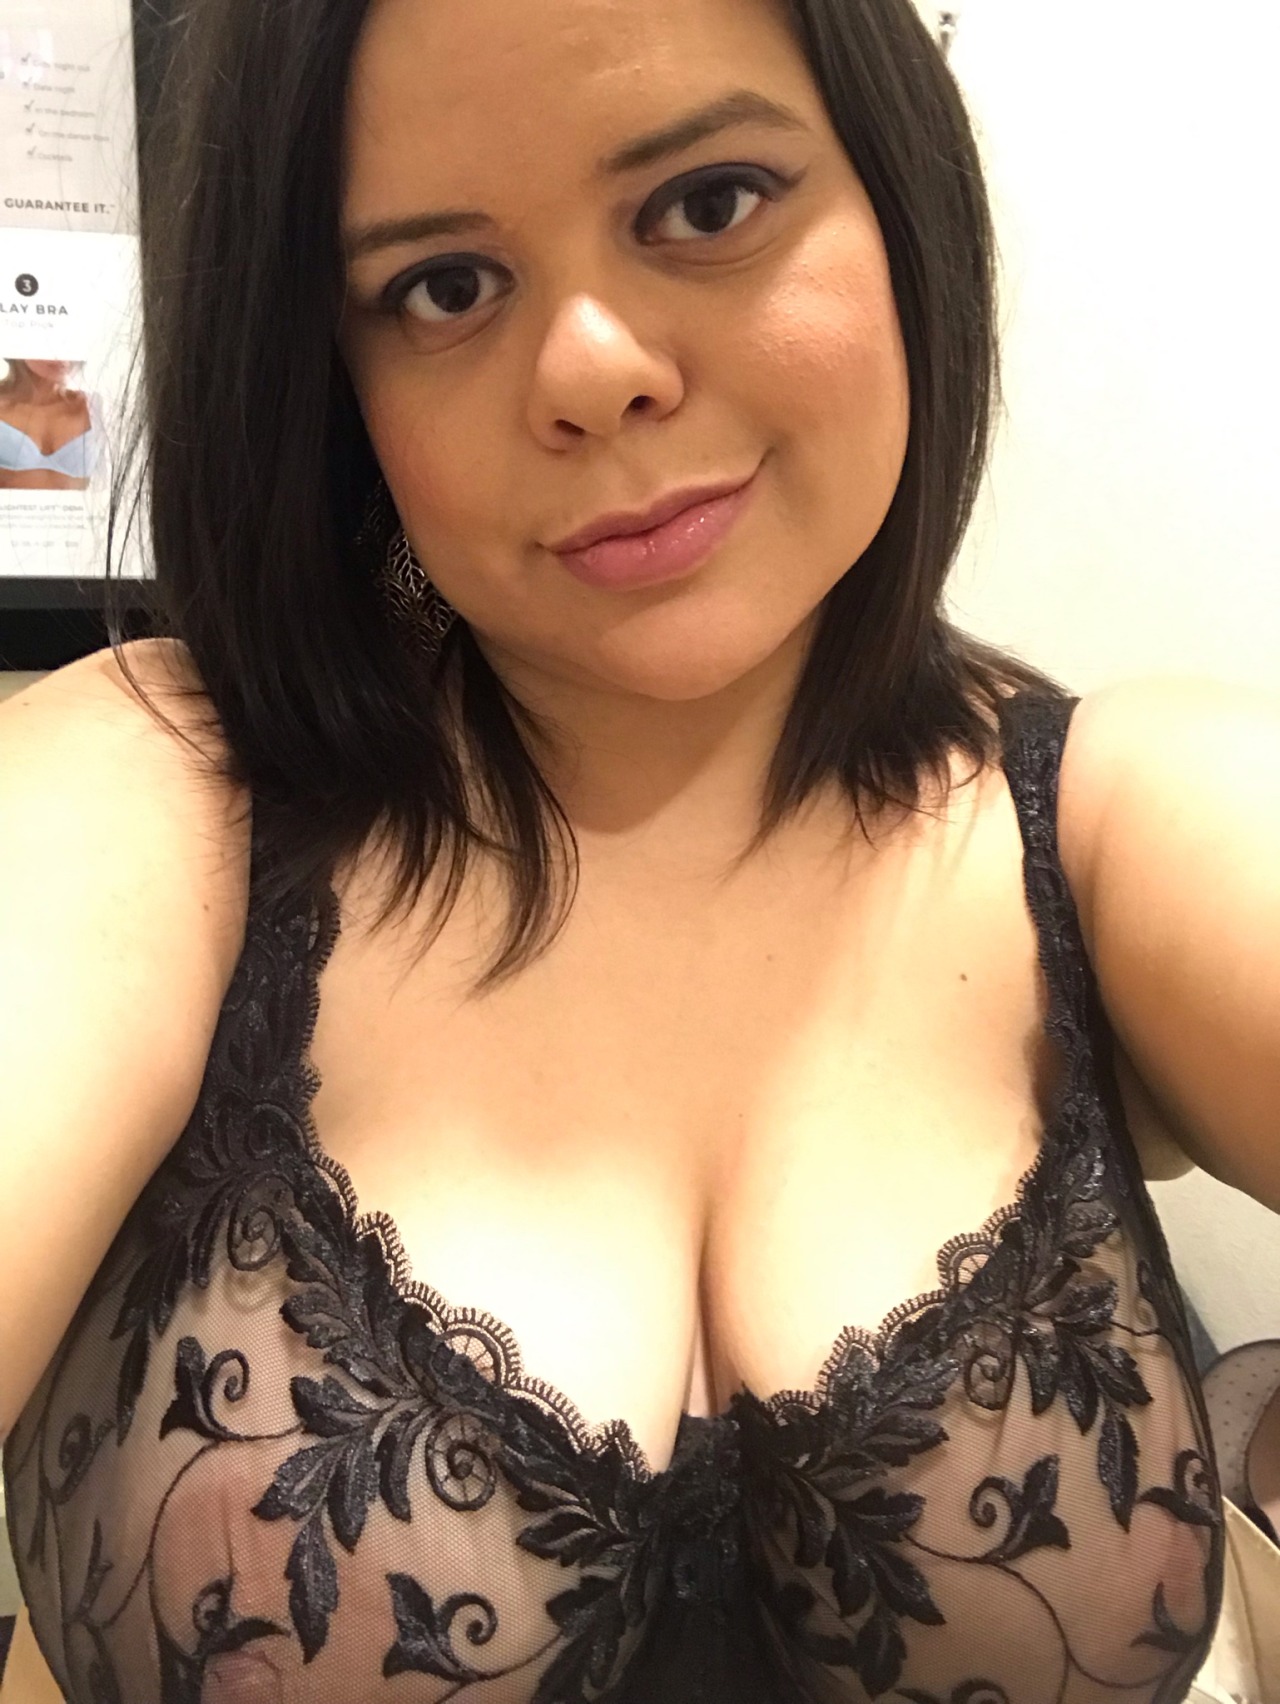 galleries hot bra and panties selfie